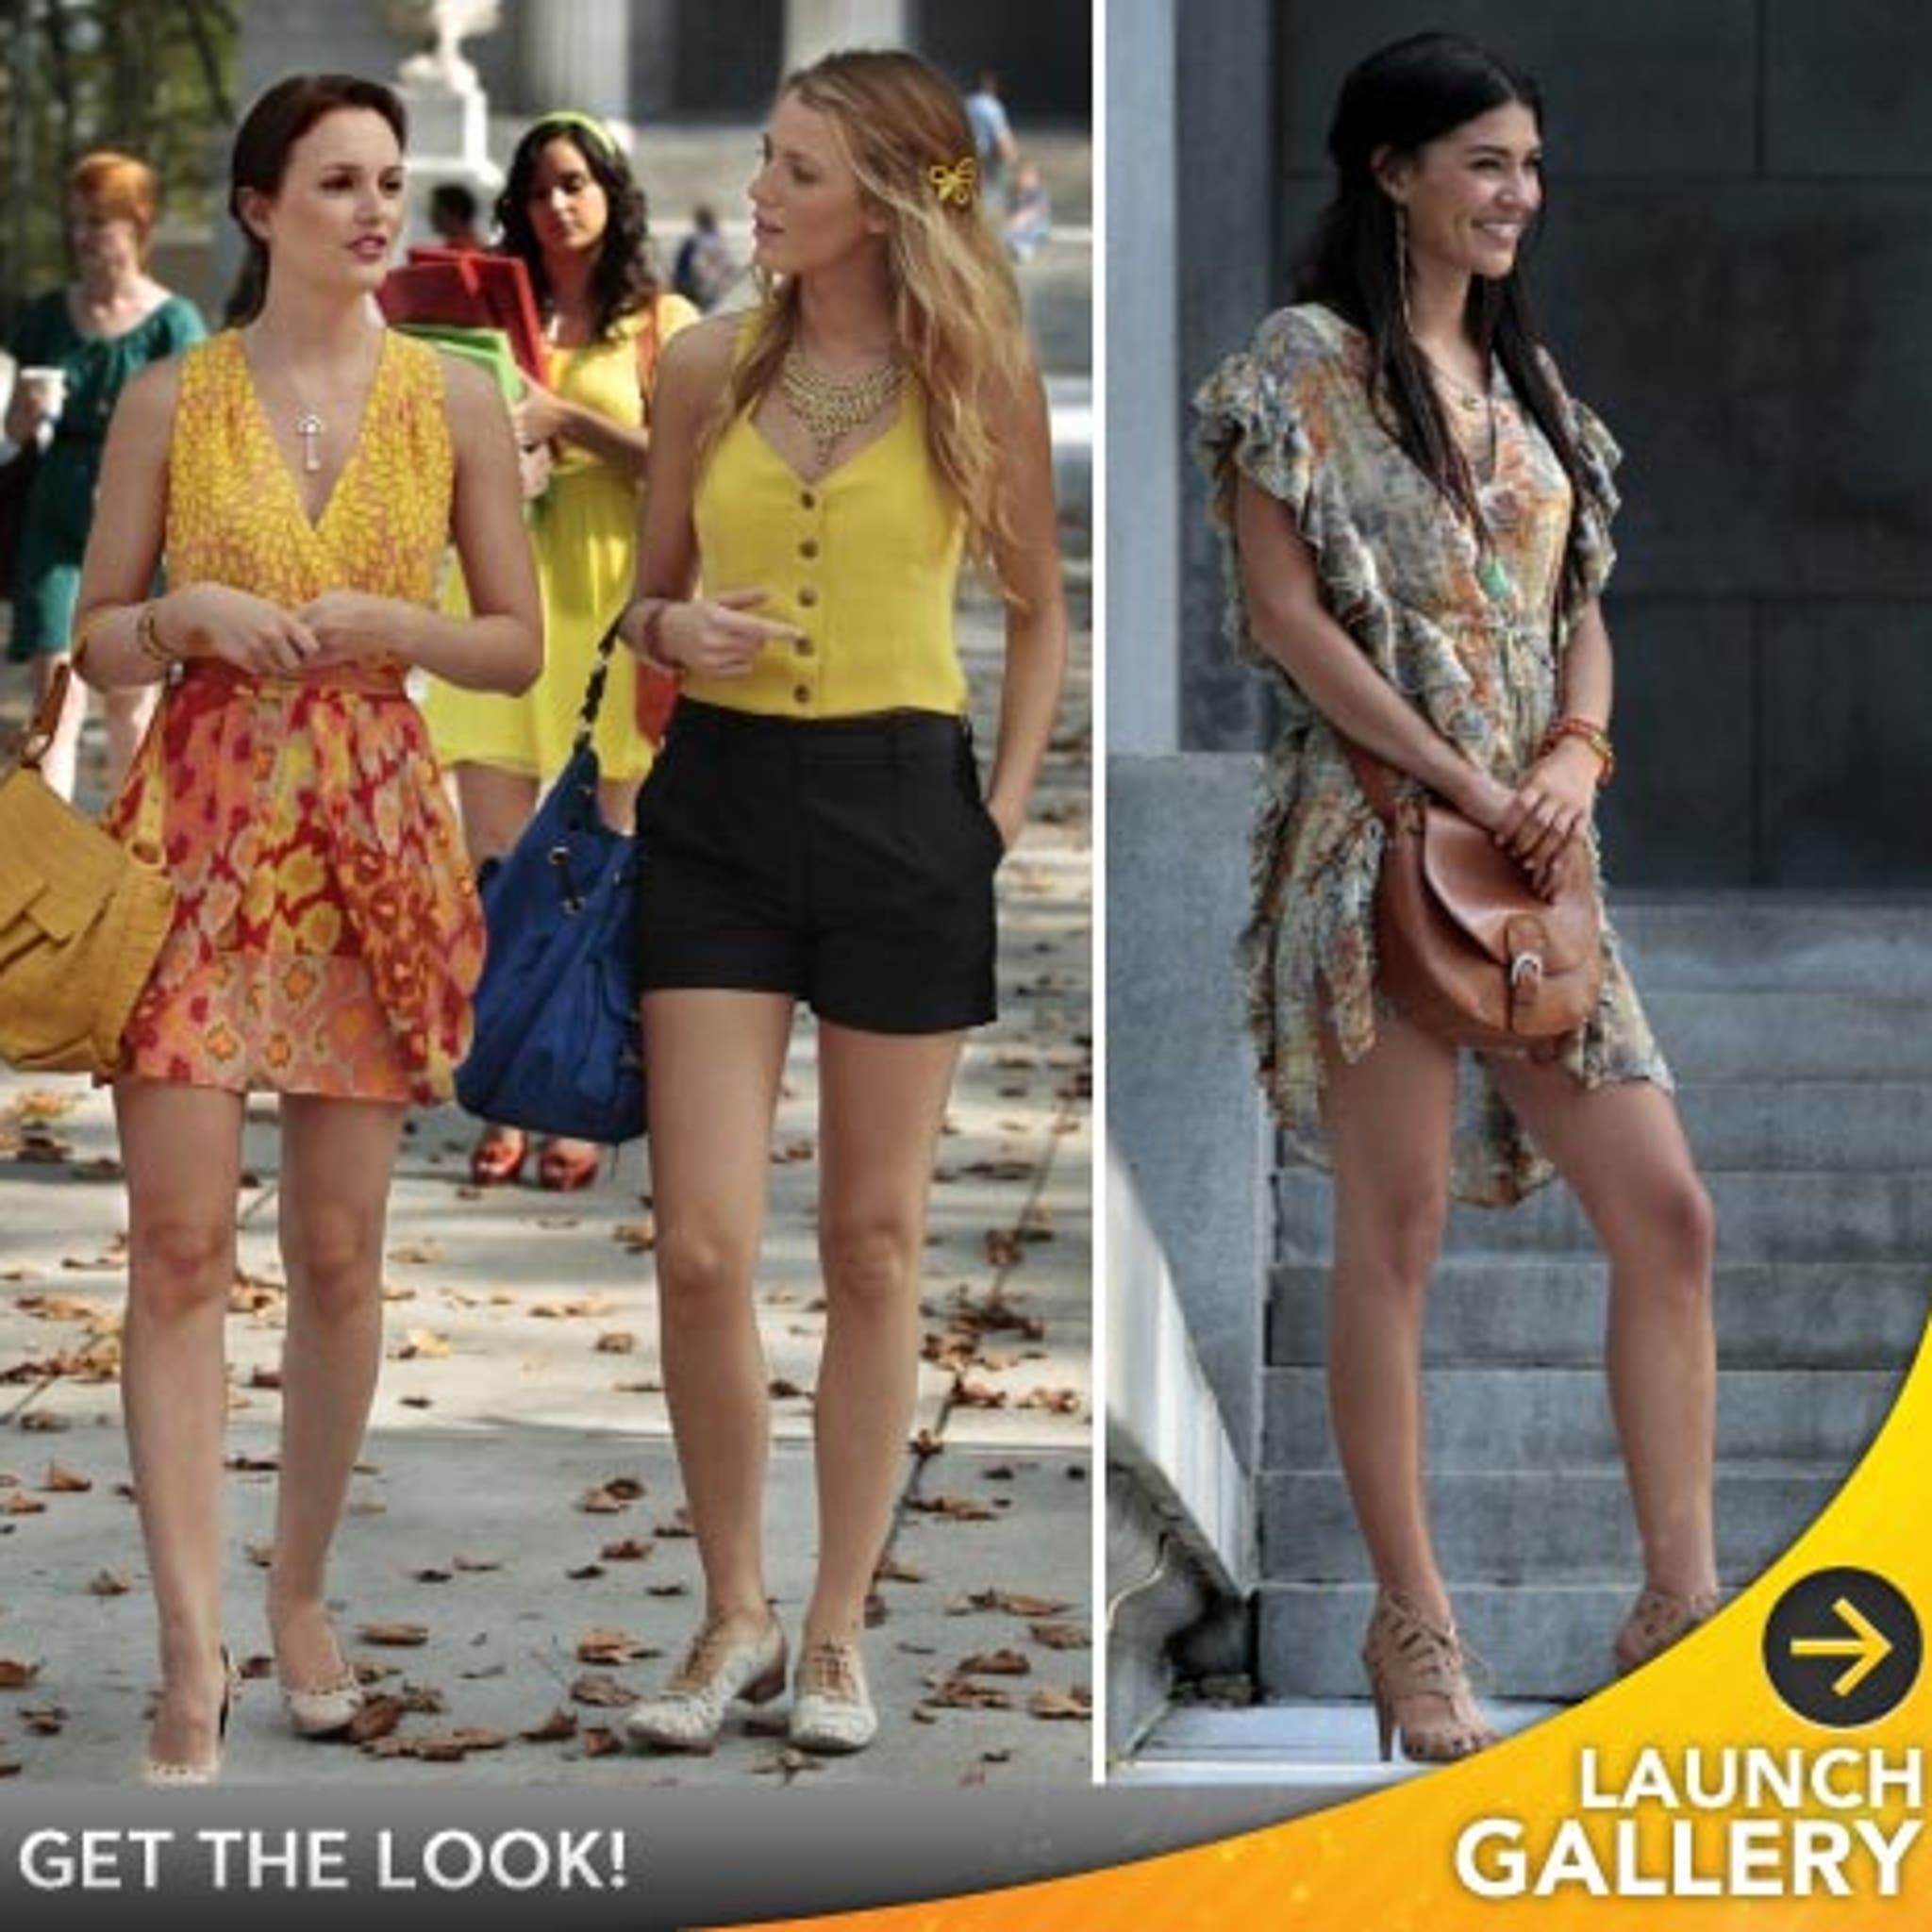 Gossip Girl: How to Get the Look!